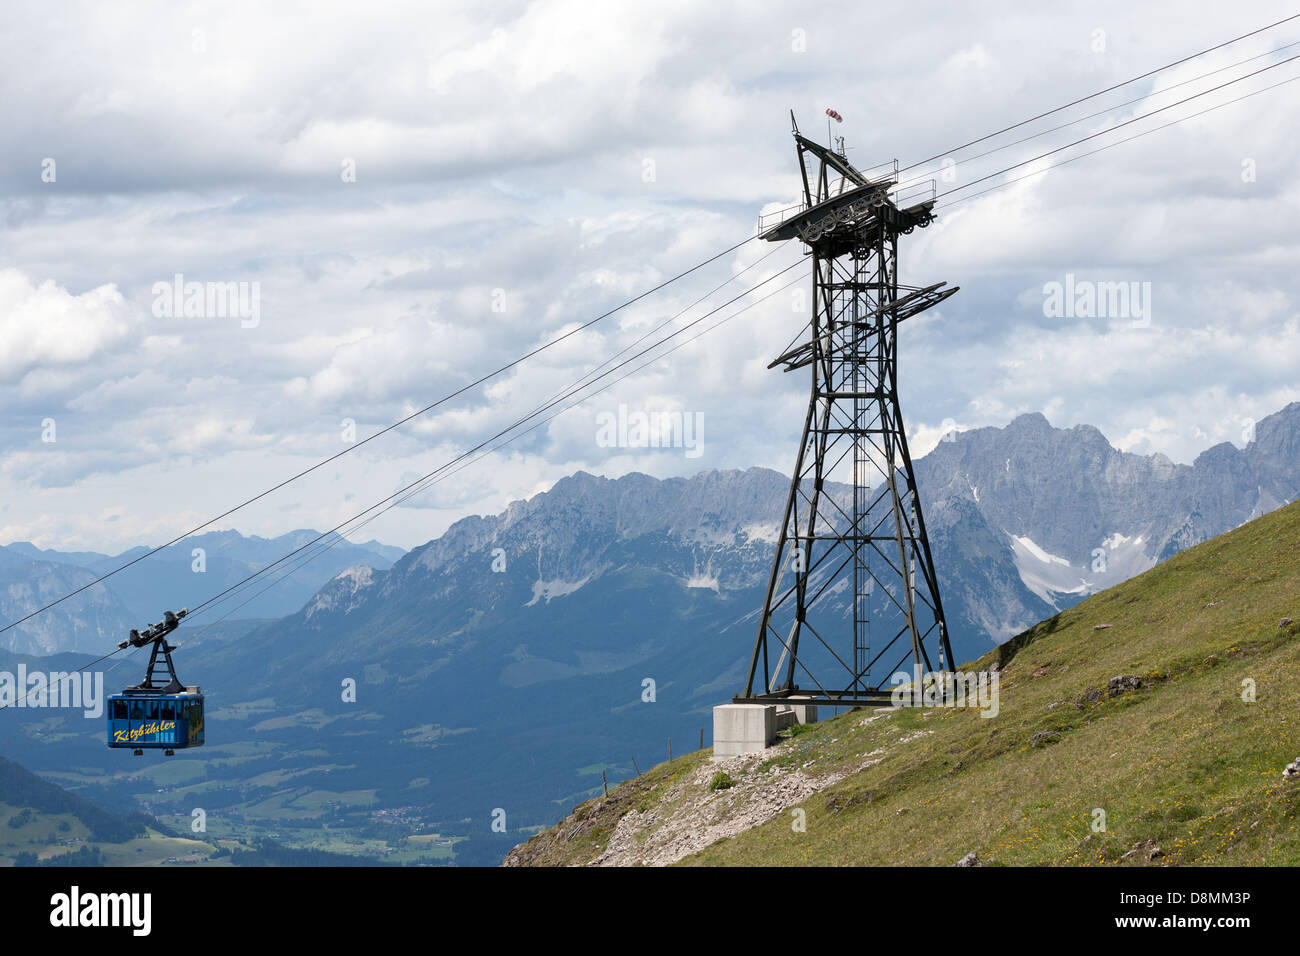 Le téléphérique Kitzbüheler Horn, Kitzbühel, la région autrichienne du Tyrol. Les montagnes à l'arrière droite sont la gamme de Wilder Kaiser Ellmau, près de Salzbourg Banque D'Images